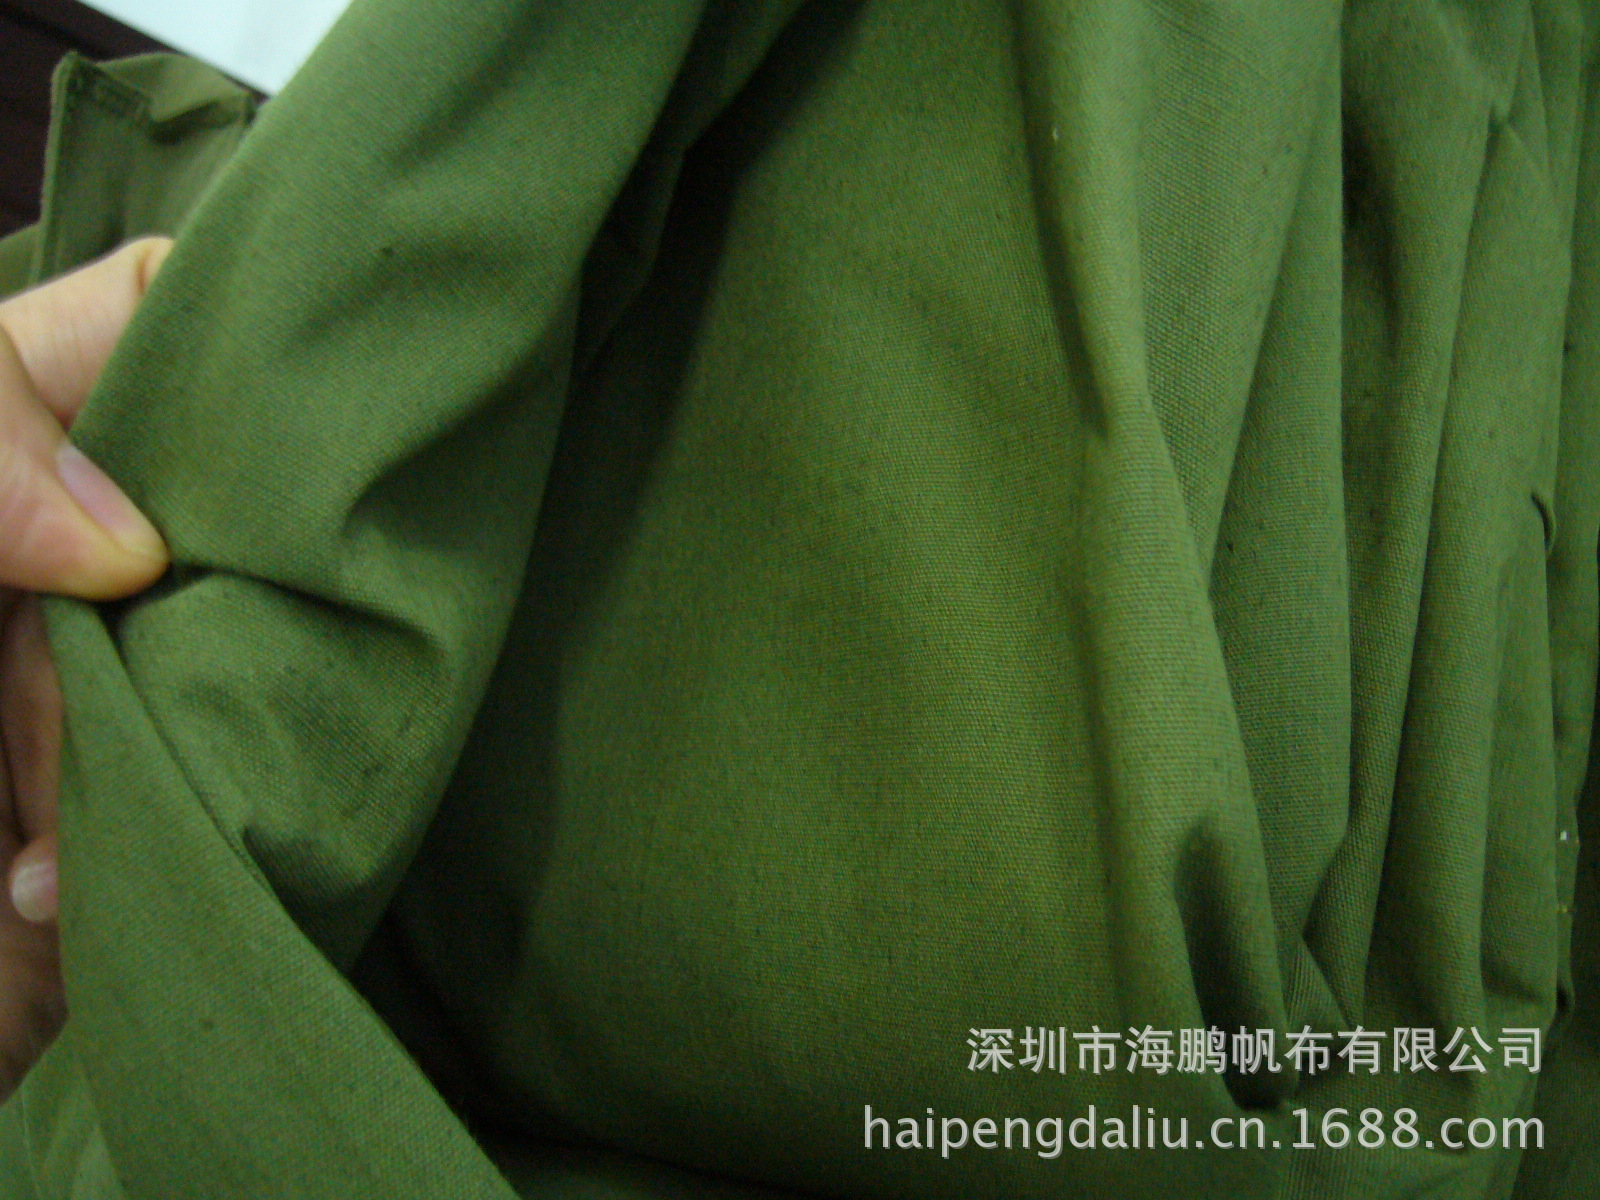 厂家直销全棉 耐磨 高强 军绿色帆布 优质面料